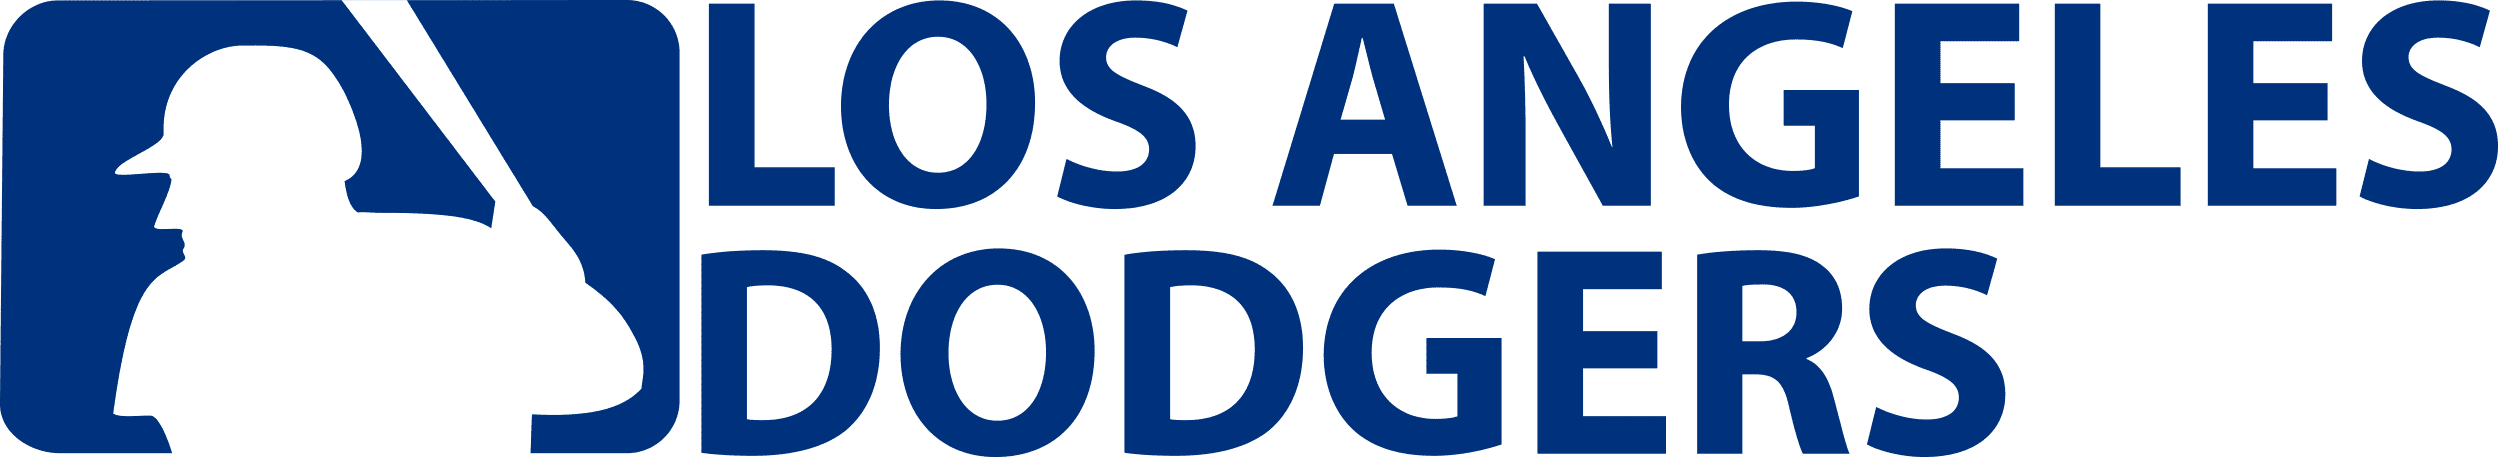 Los Angeles Dodgers LA Svg Png online in USA